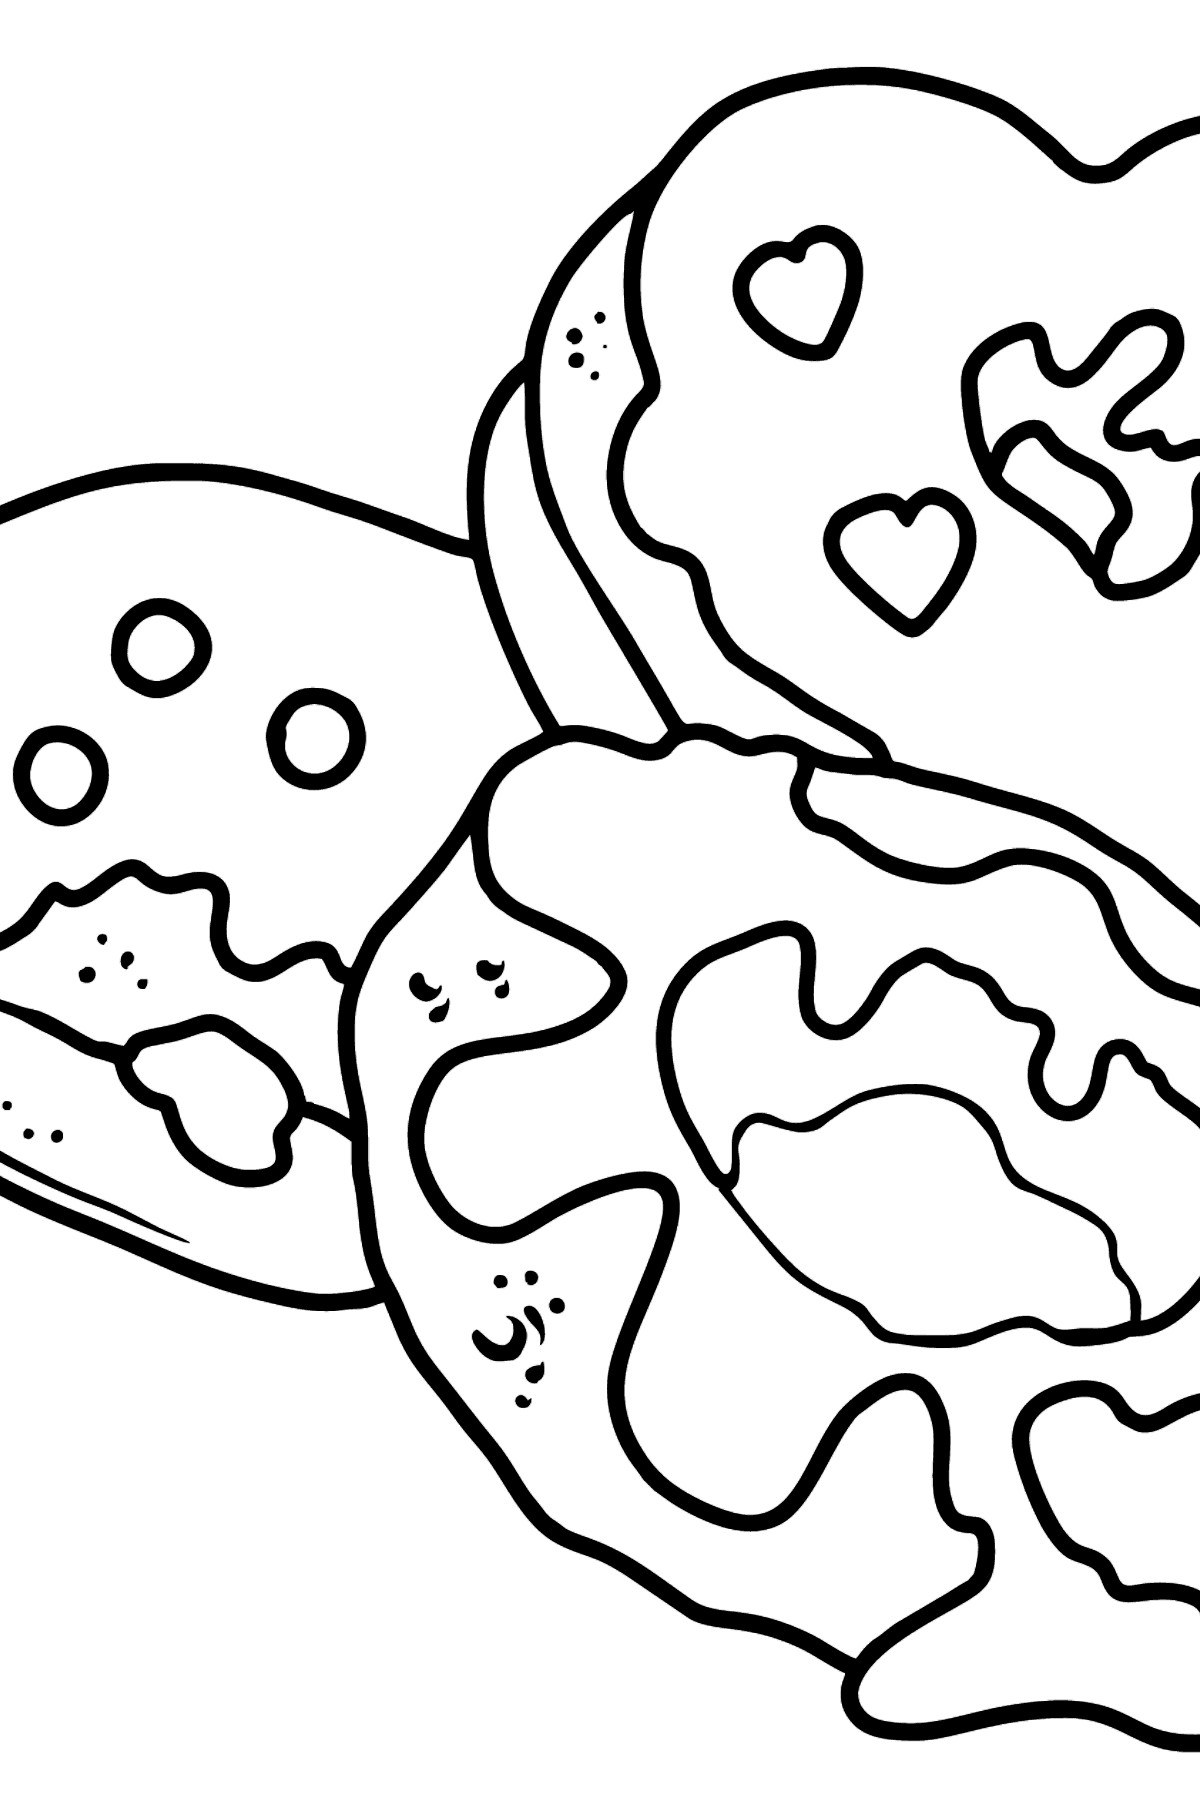 Раскраска пончики разной формы - Картинки для Детей